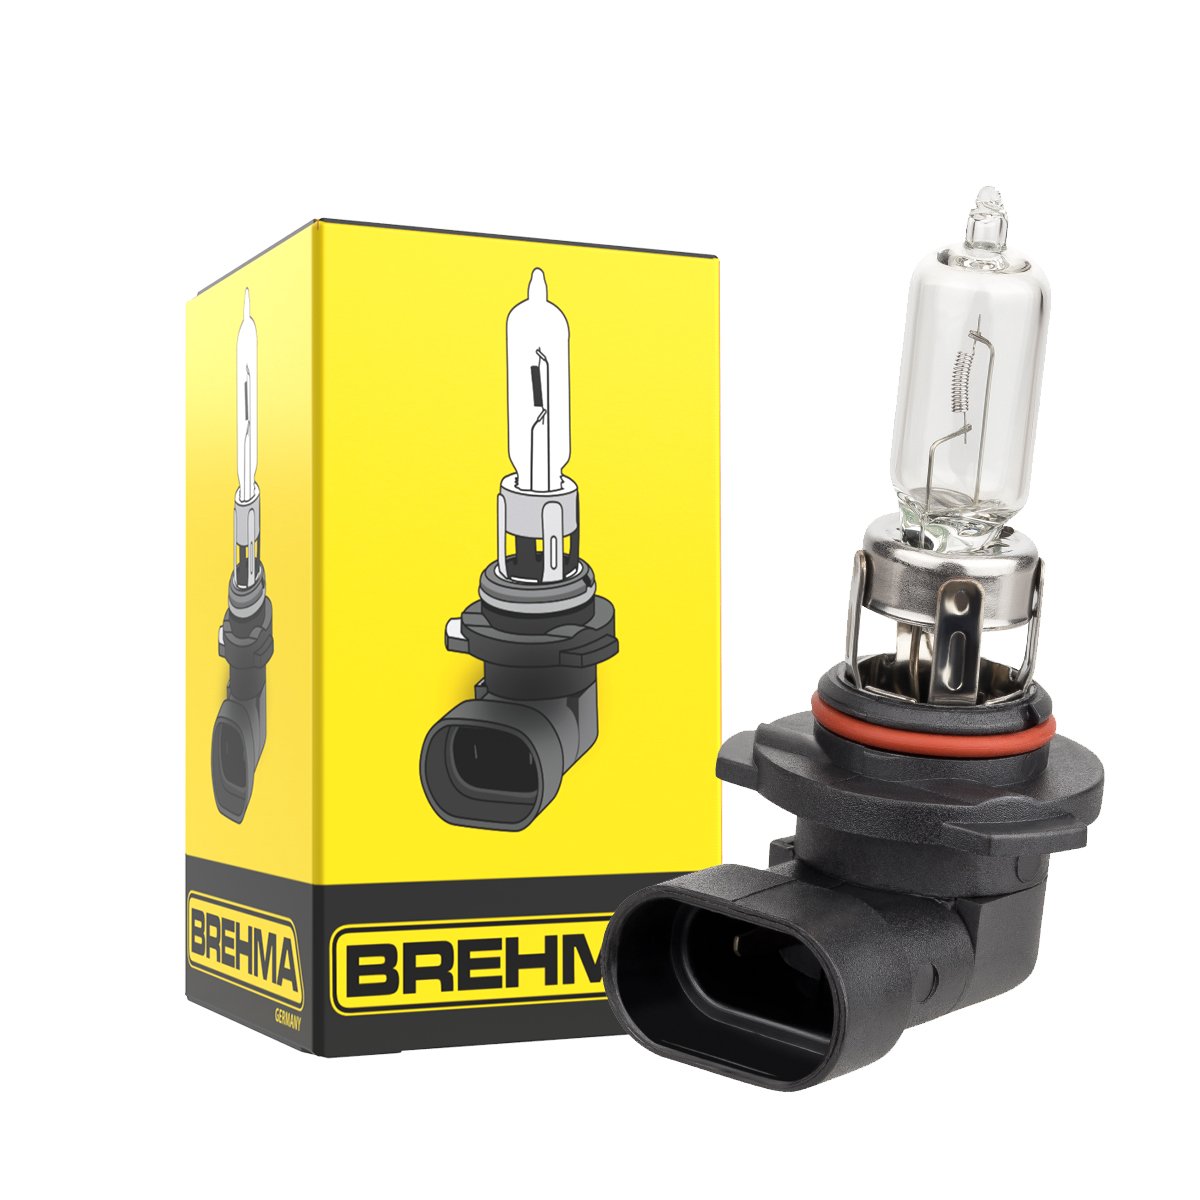 Auto-Lampen-Discount - H7 Lampen und mehr günstig kaufen - 10x BREHMA  Classic HB3 9005 Lampe 12V 60W P20d